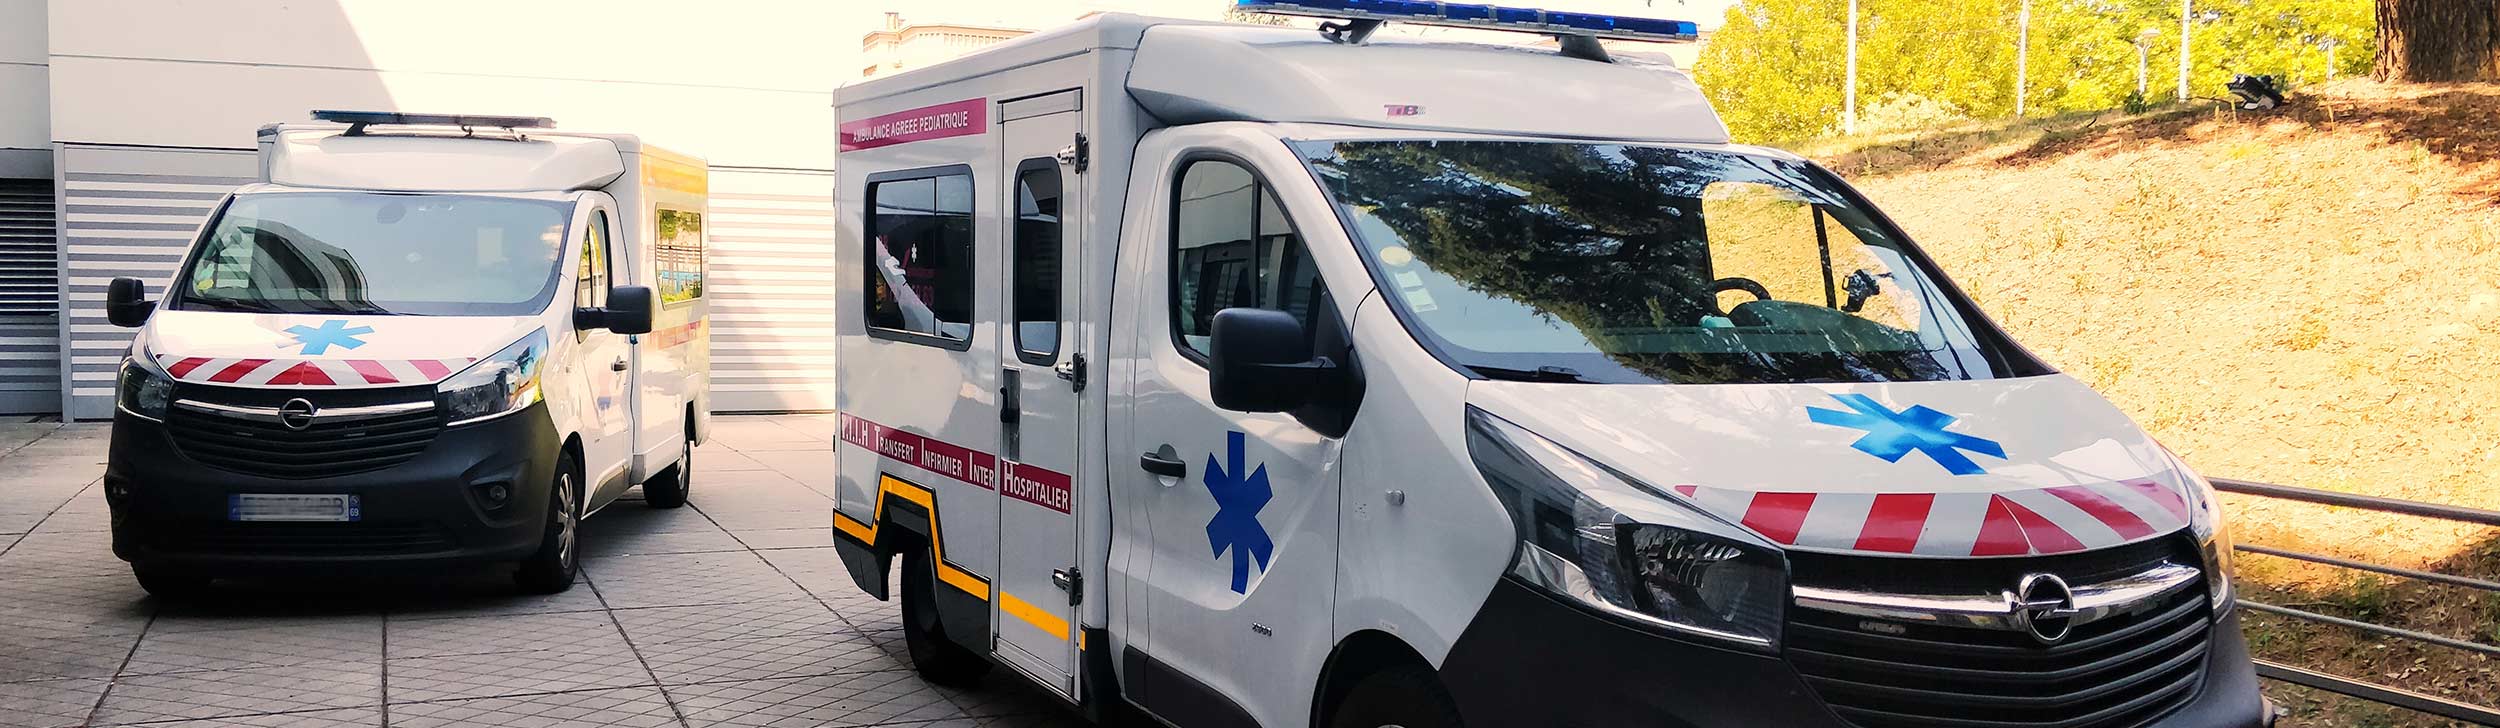 Dokever Ambulance à Lyon, présentation et histoire.